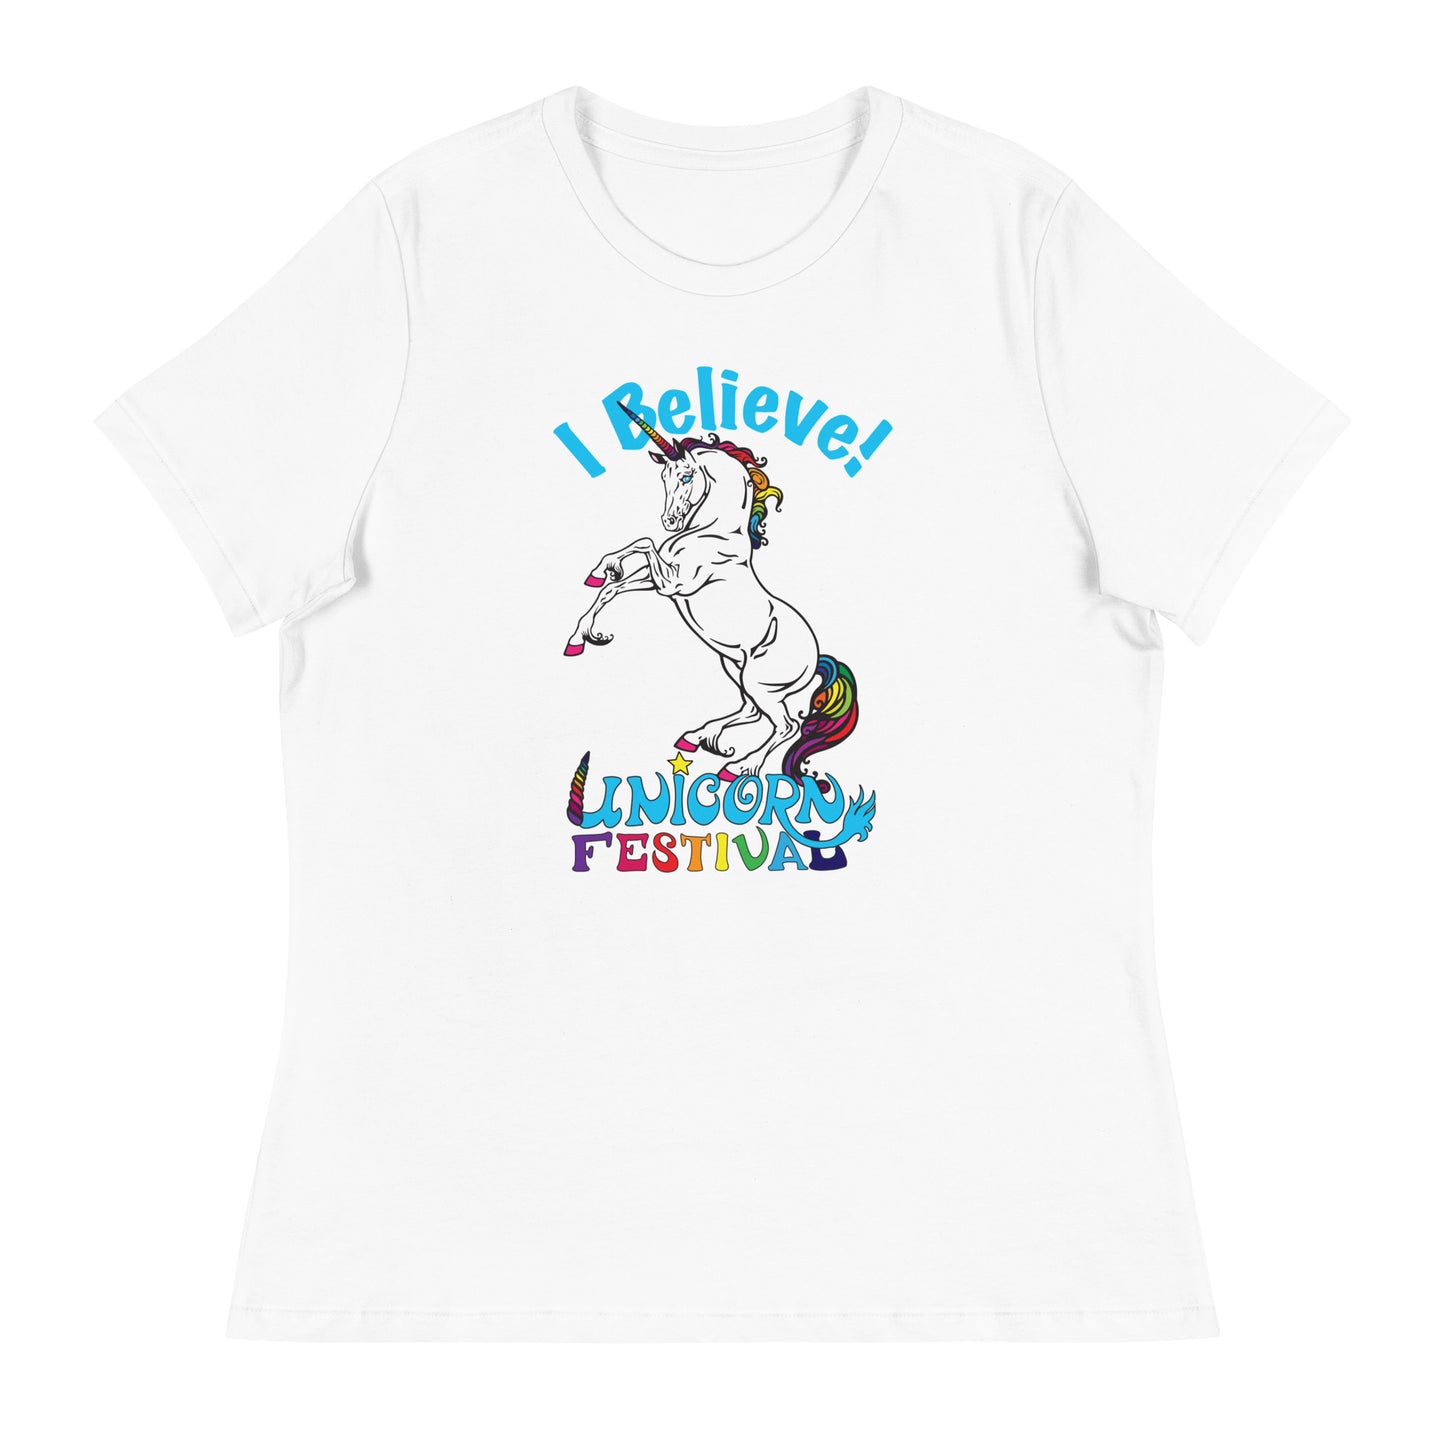 Unicorn Festival Women's Relaxed T-Shirt